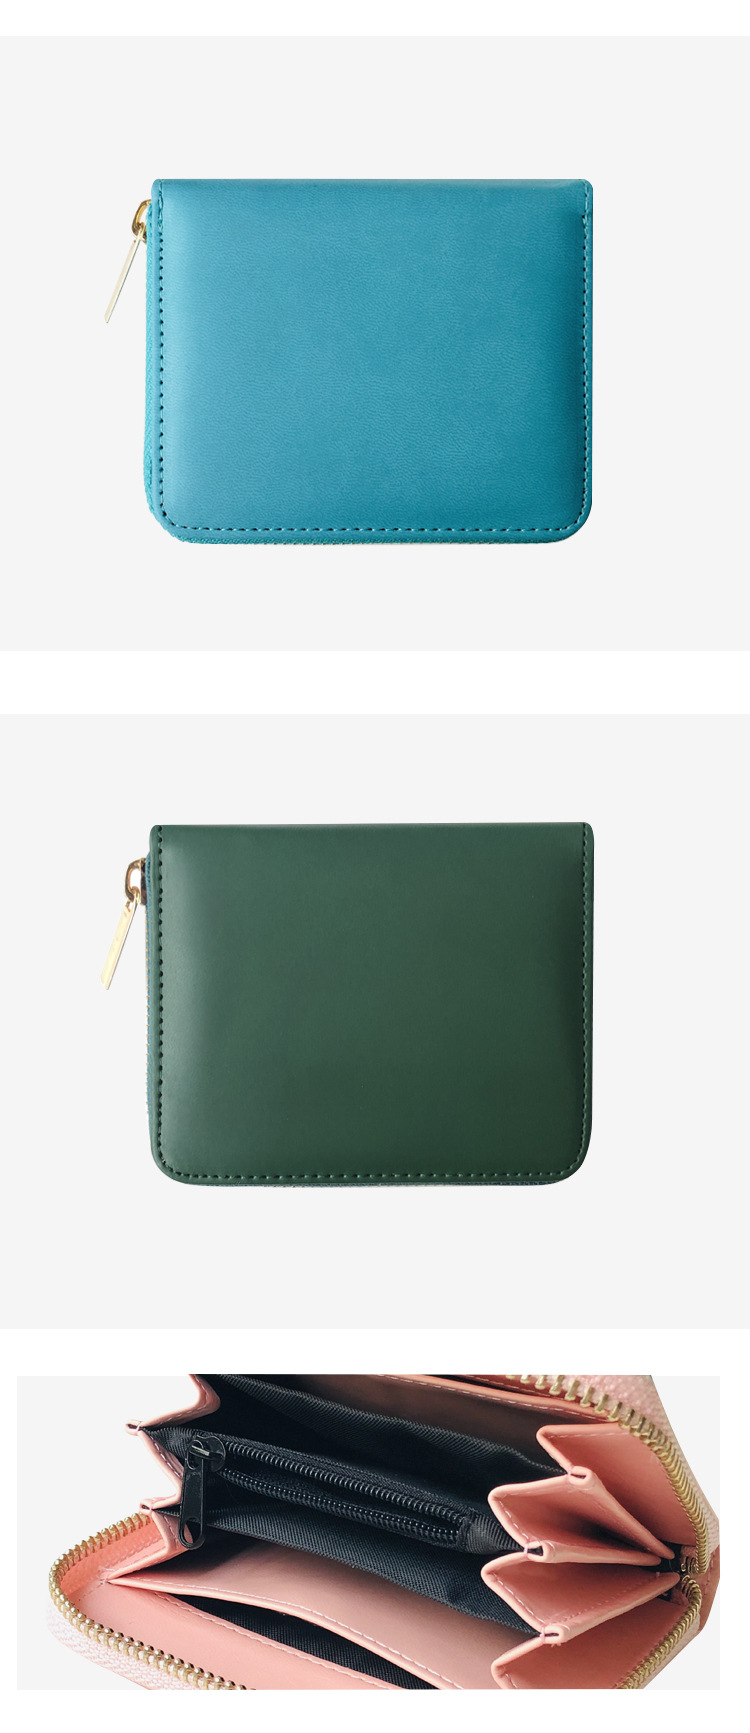 Nouvelle mode corenne zipper loisirs petite carte sac portecarte d39identit petit portefeuille pour femmes en grospicture8